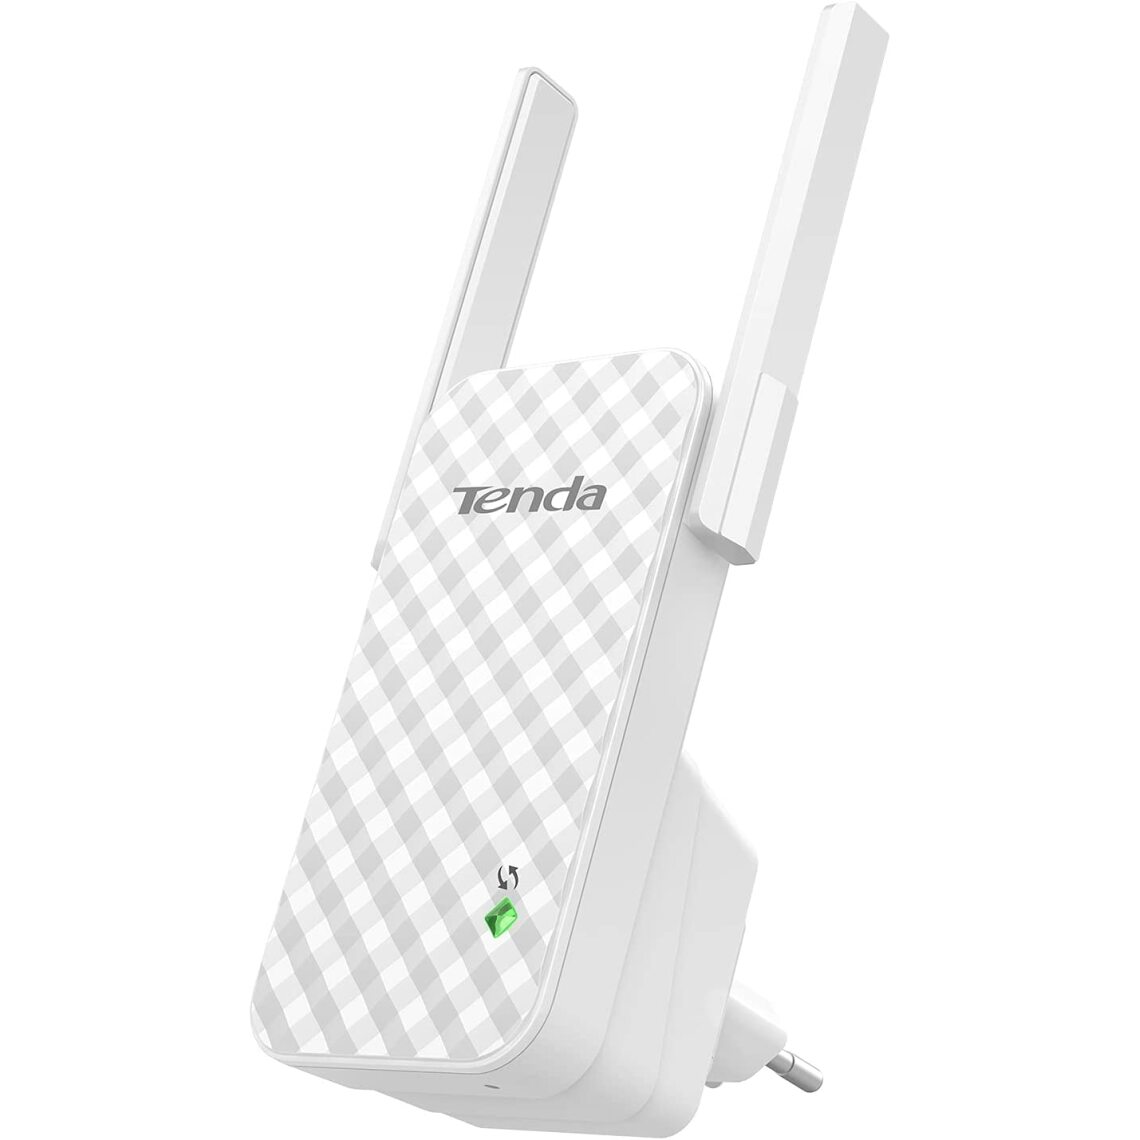 Tenda - Répeteur WIFI 300Mbps - A9, couverture à 200ã¡ - Modem / Routeur / Points d'accès